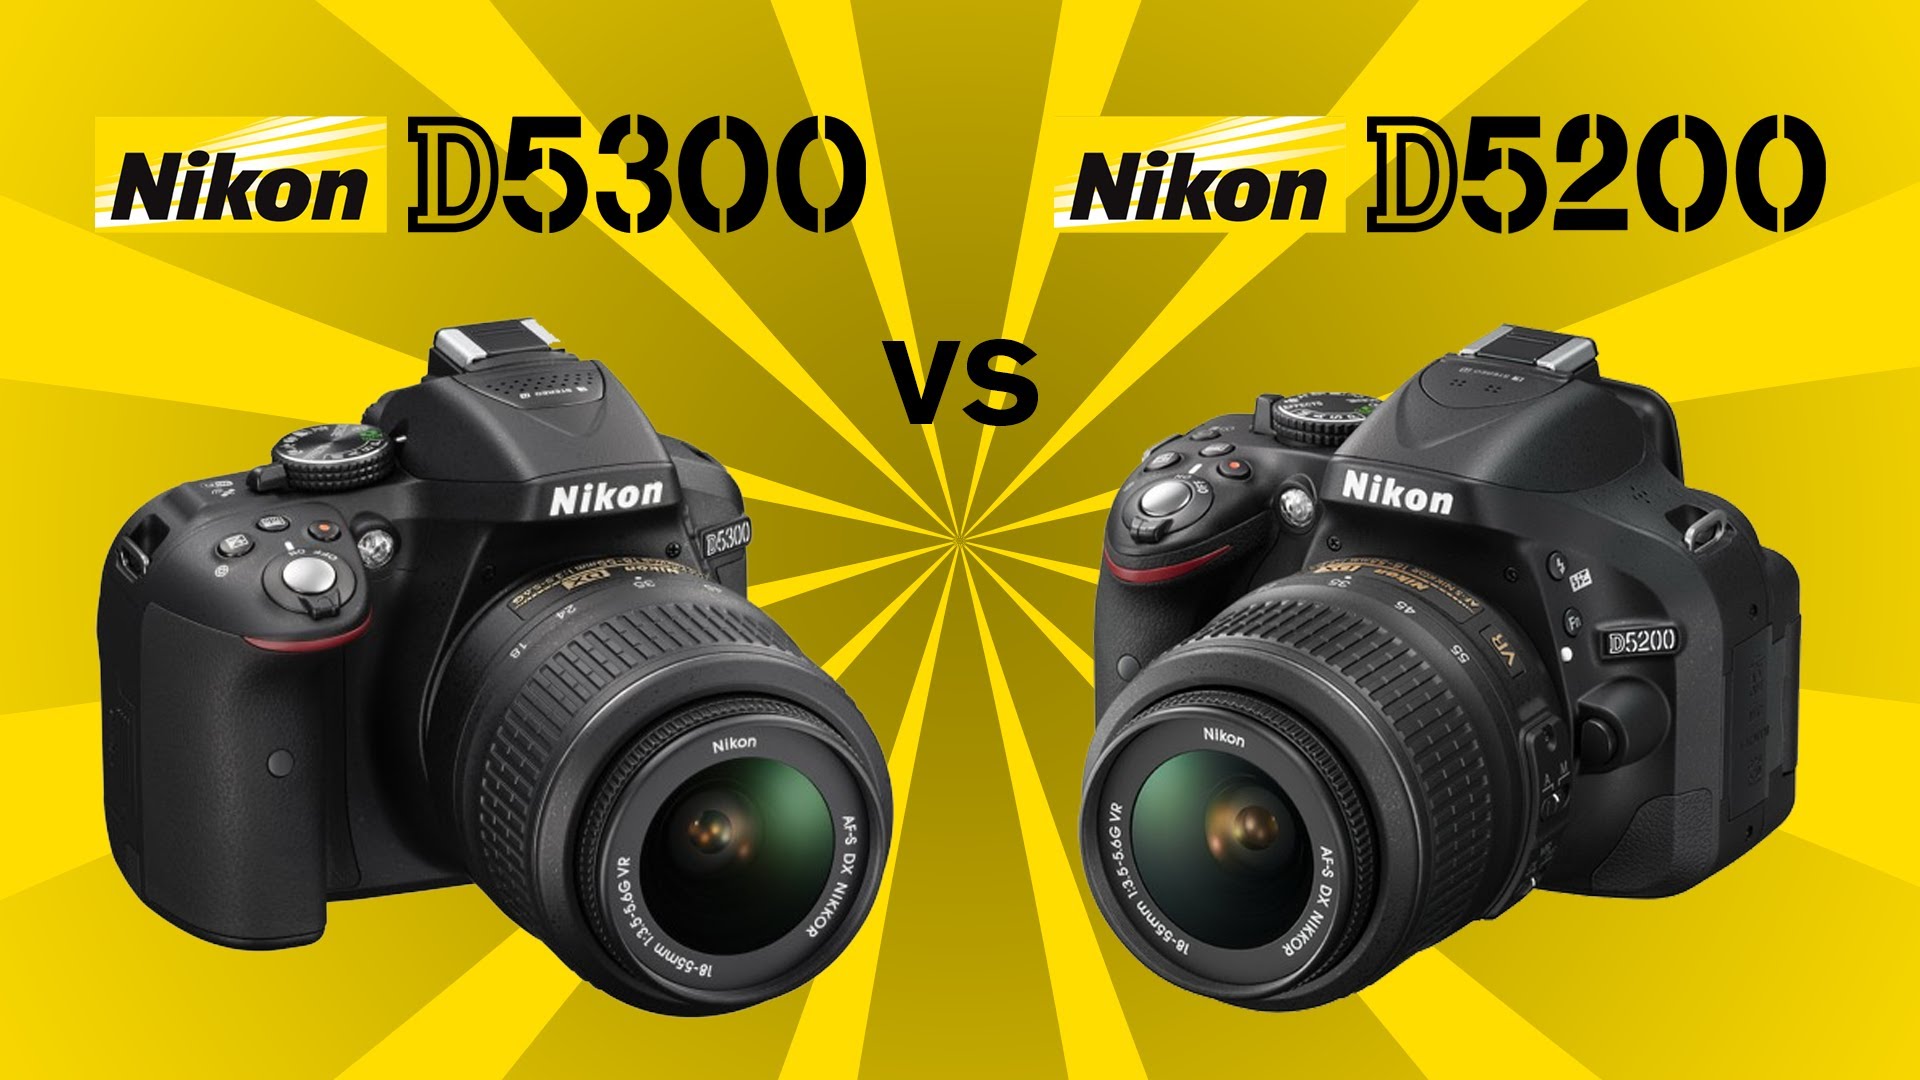 Nikon D5300 vs Nikon D5200